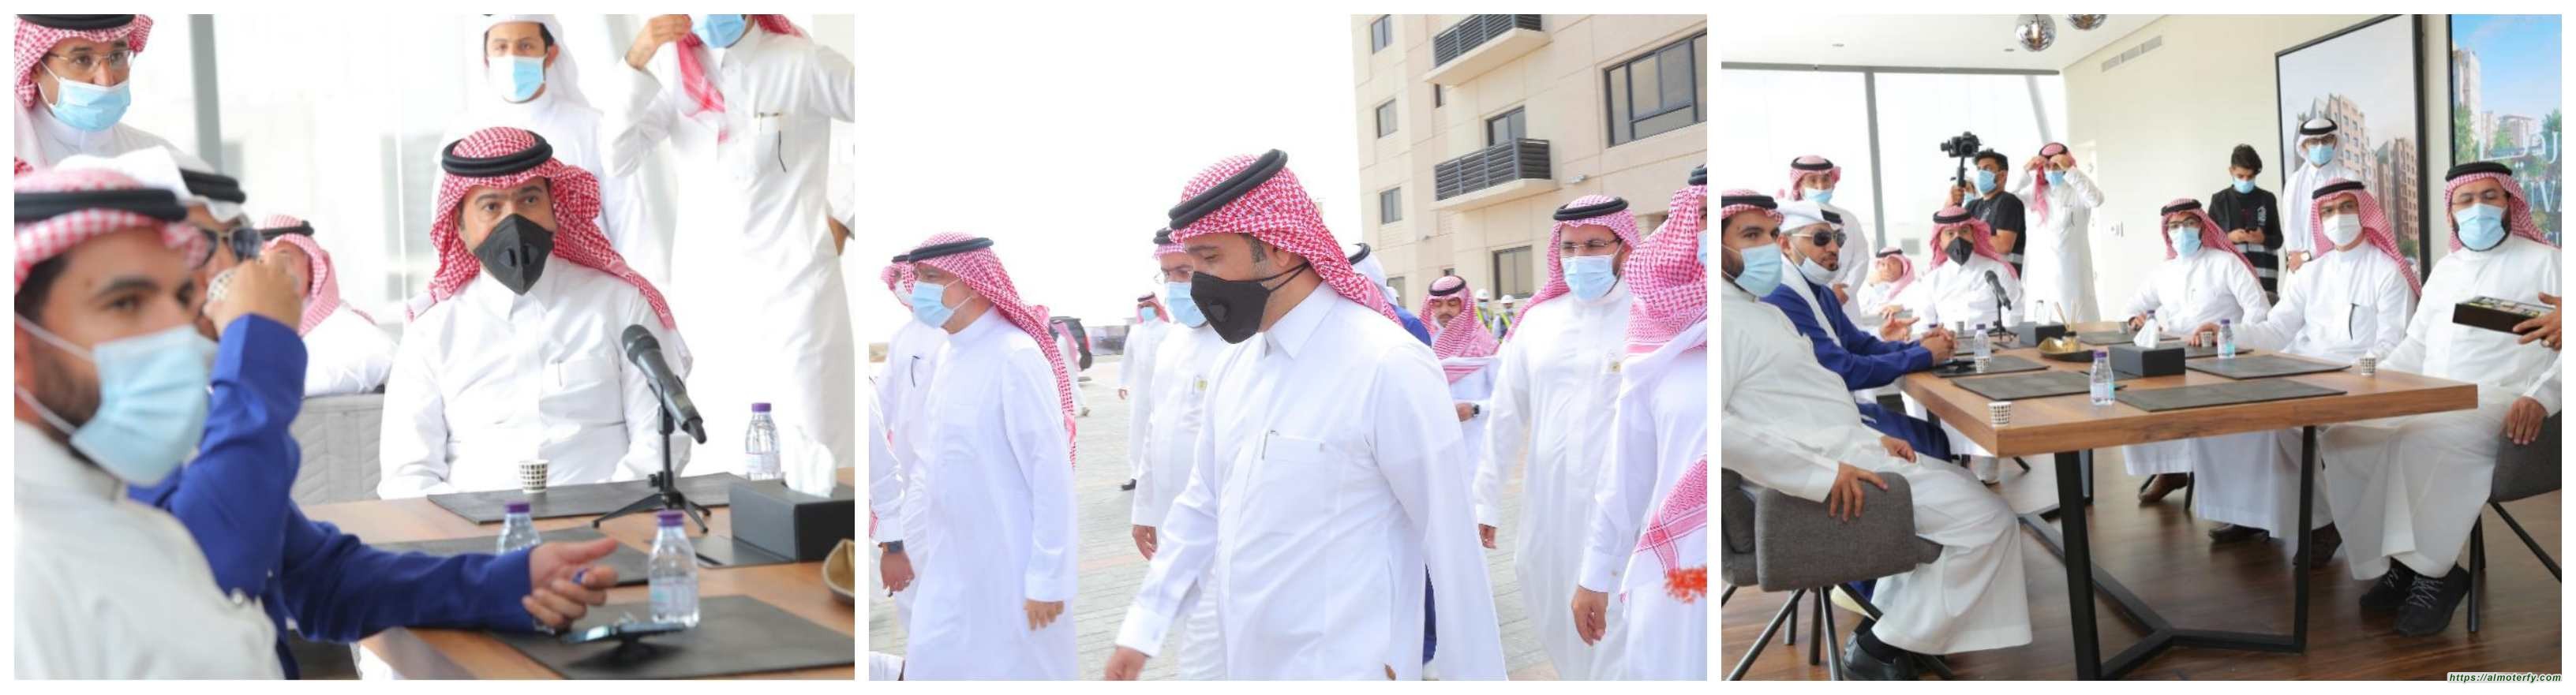 وزير الإسكان يتفقد مشروع "بوفارديا سيتي" وعدد من المشاريع في جدة